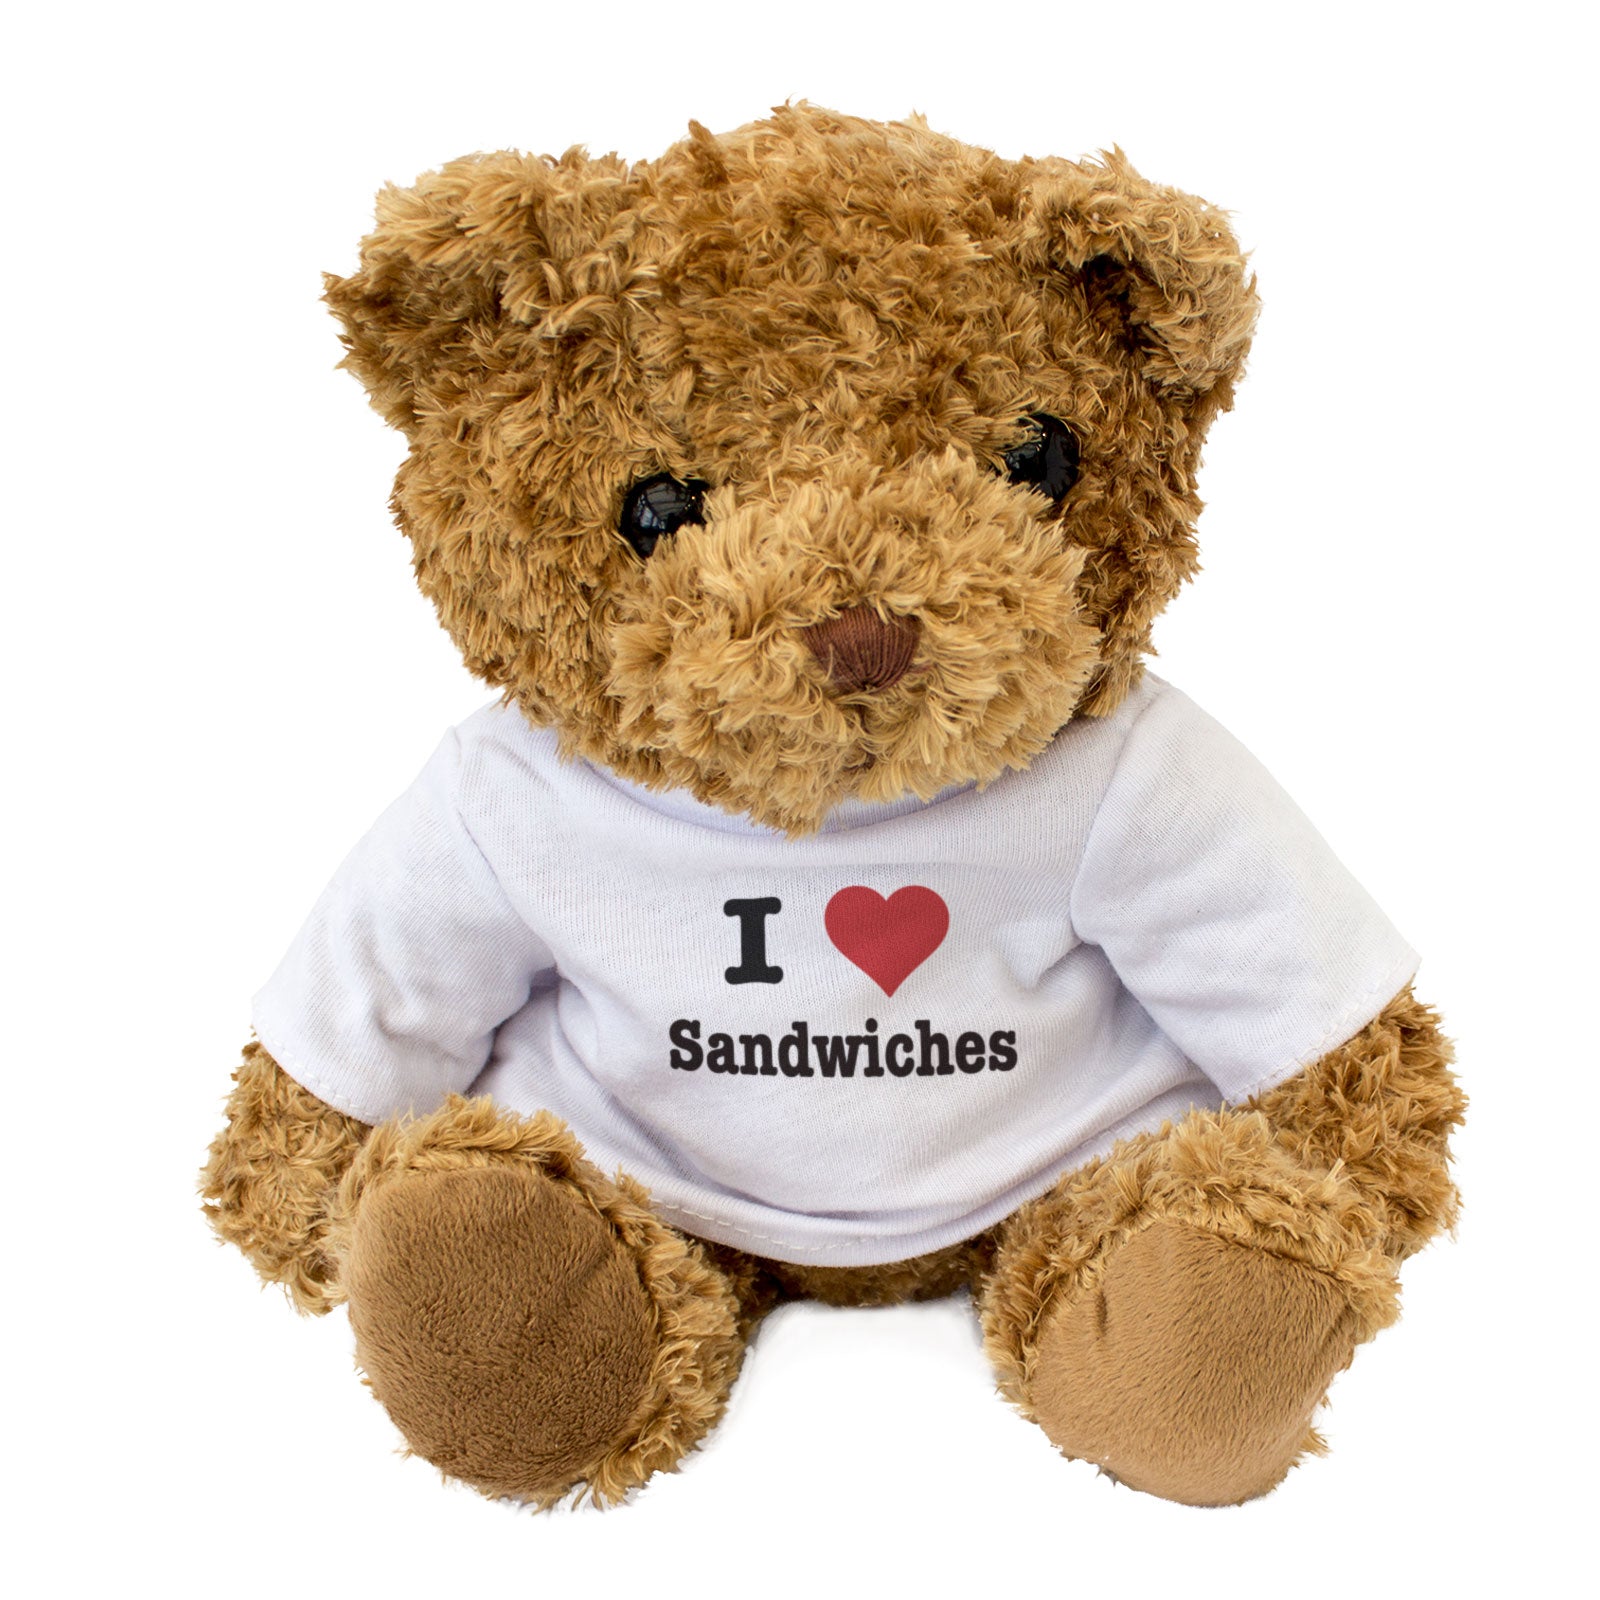 I Love Sandwiches - Teddy Bear